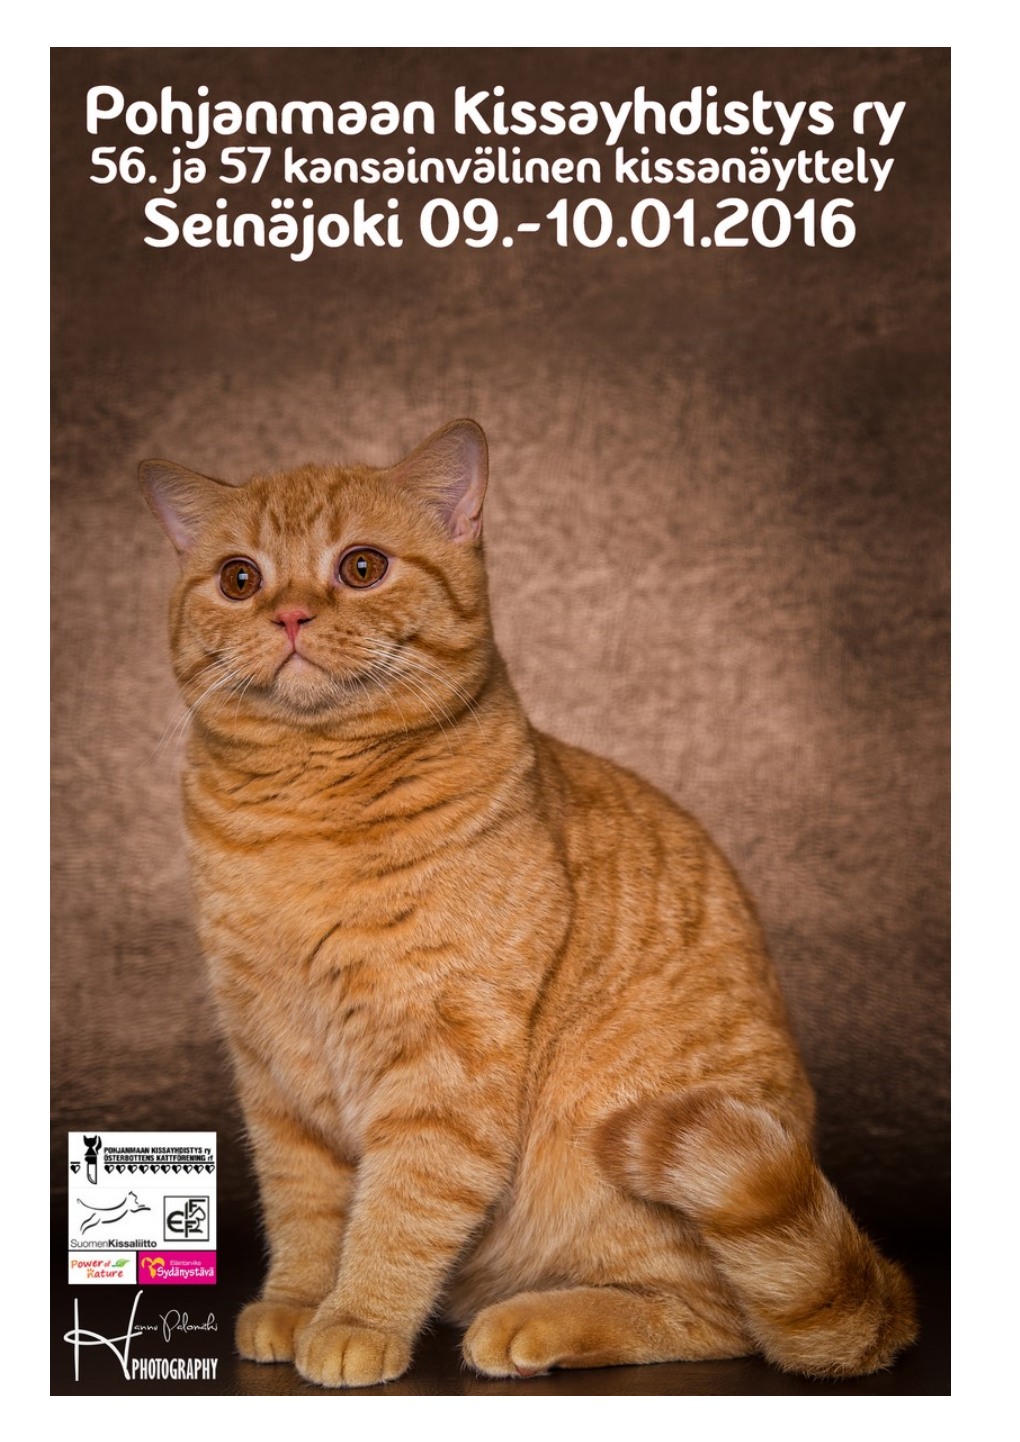 POH-KIS 56-57. Kansainvälinen Kissanäyttely 09-.10.01.2016